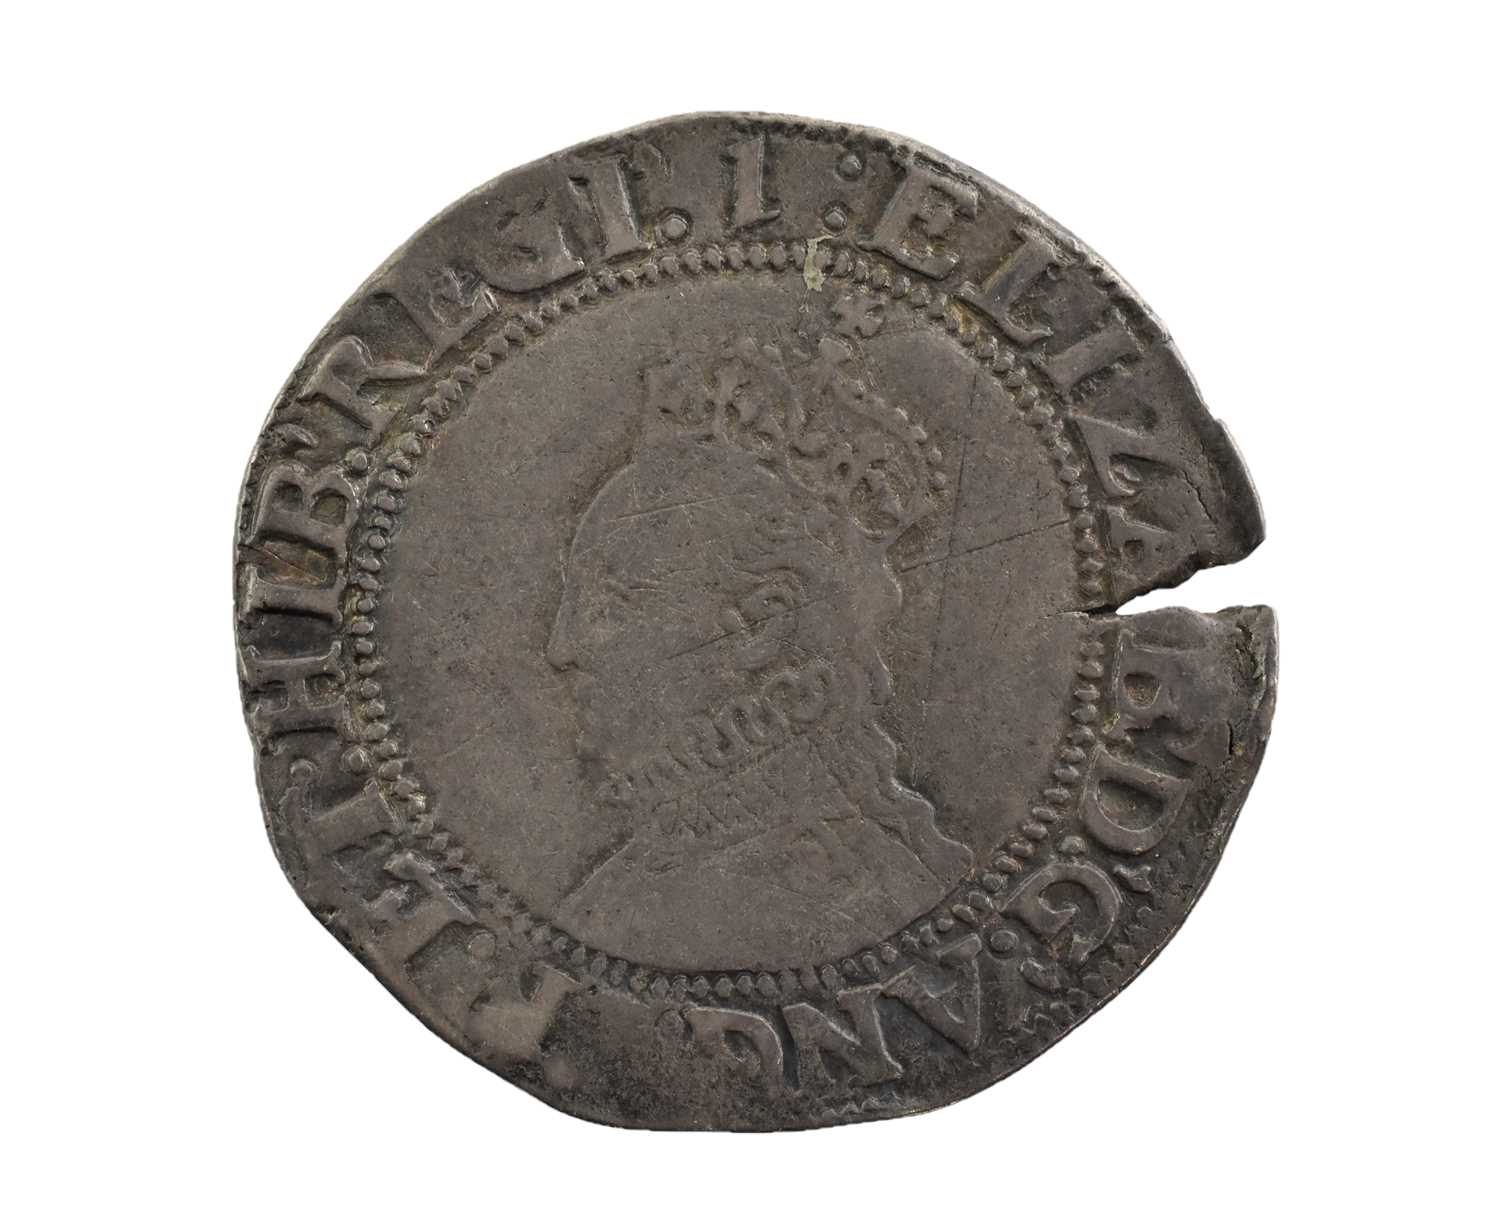 Elizabeth I, Shilling 1601-2 (31mm, 5.76g), seventh issue 1601-2, mm 1, obv. crowned bust left, rev.